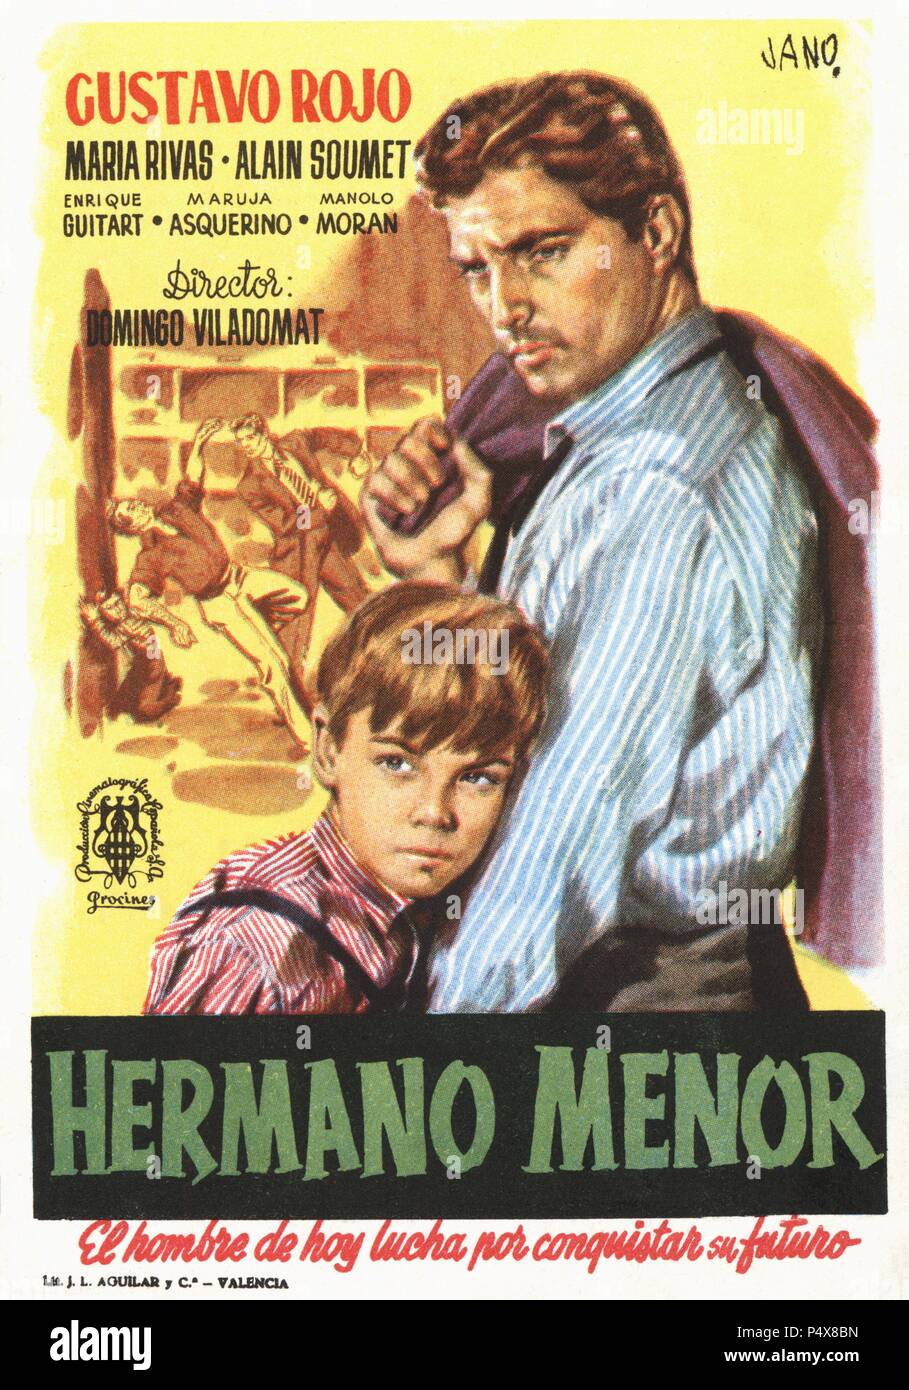 Cartel de la película Hermano Menor, ilustrado por Jano; con Gustavo Rojo y María Ribas, dirigida por Domingo Viladomat. España, año 1952. Stock Photo